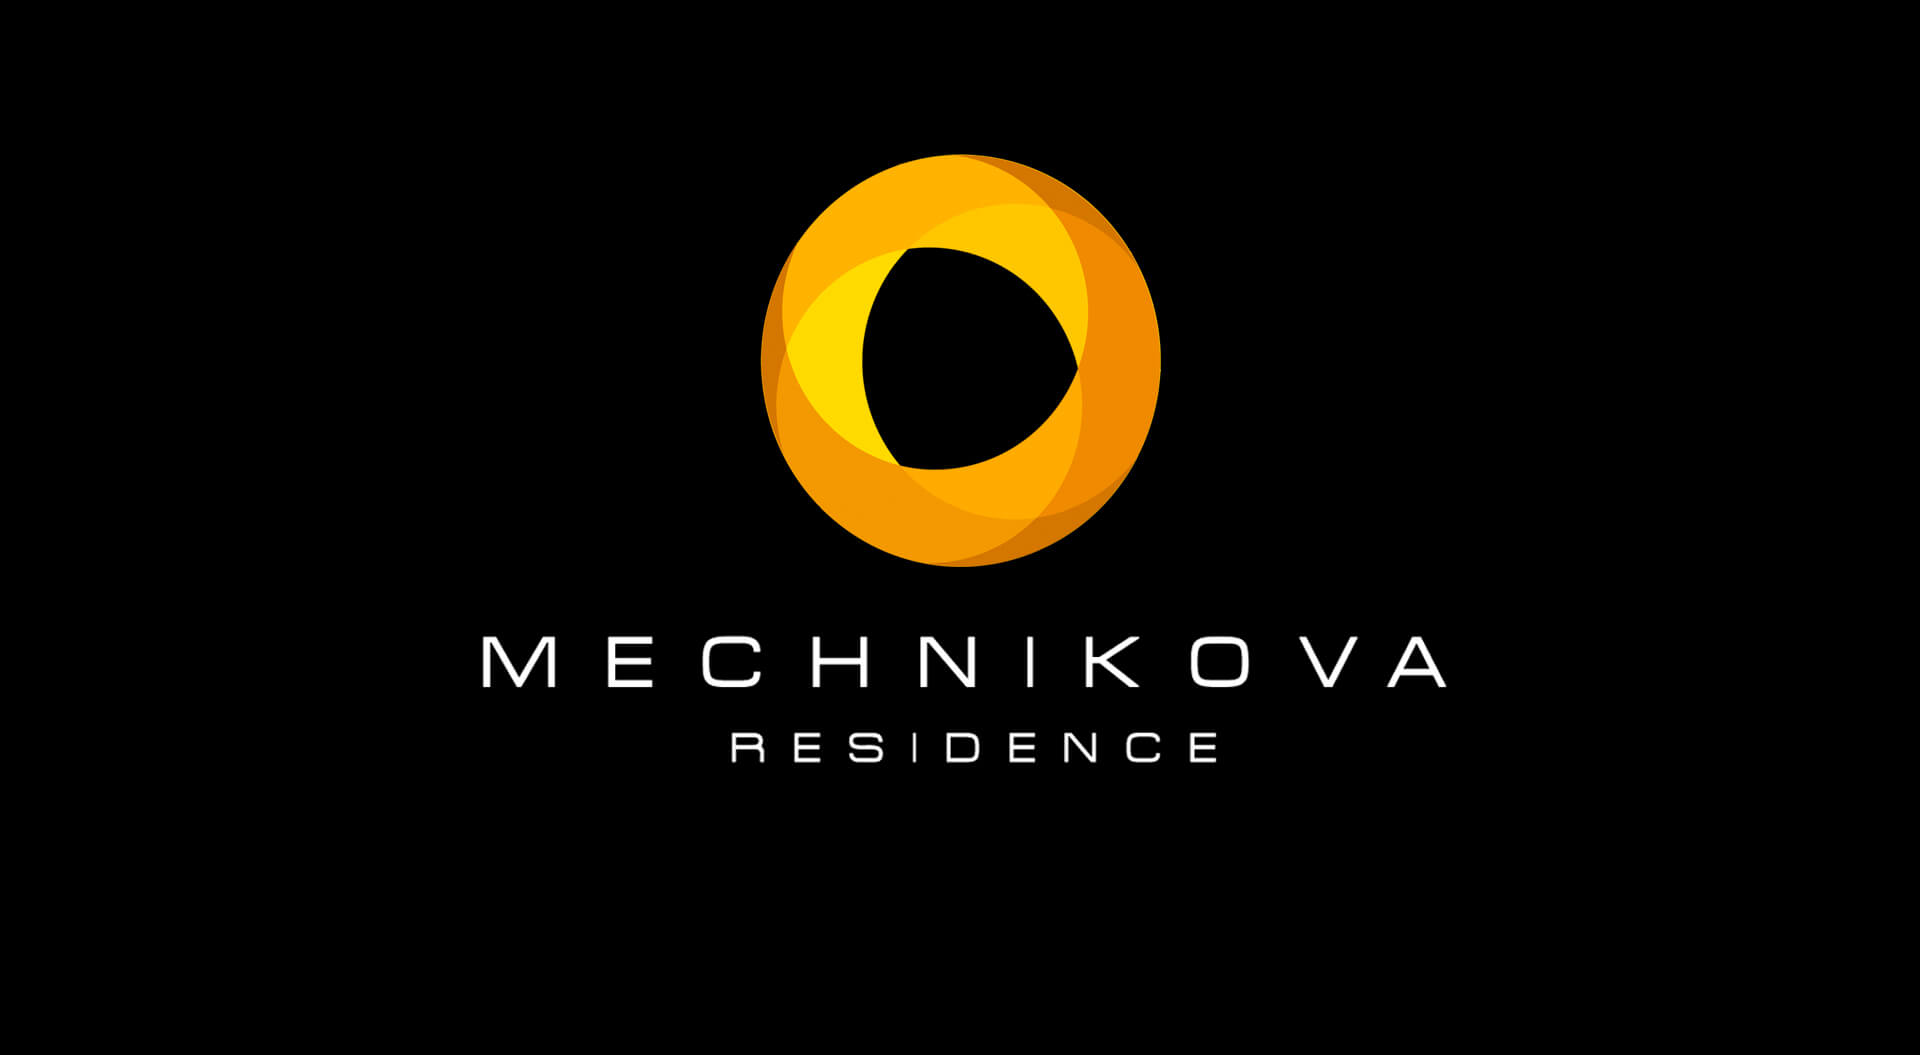 Residential property branding, Mechnikova, website luxury branding for residential properties, real estate reality residential brands, design agency  for Continuum Ukraine